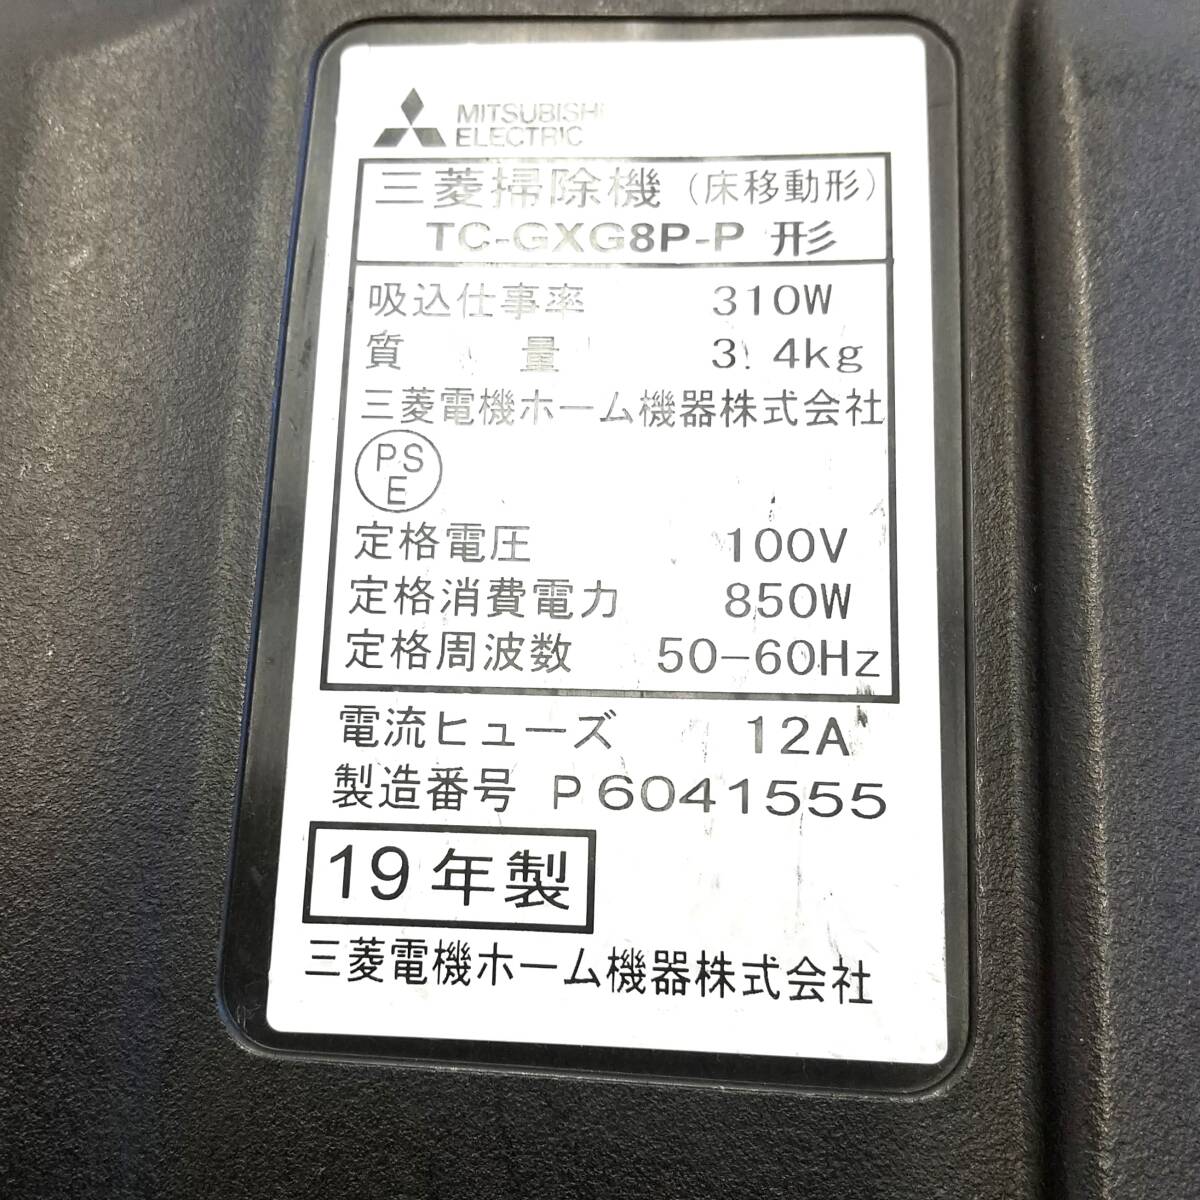 【820】中古品 2019年製 三菱 紙パック式掃除機 TC-GXG8P-P_画像4